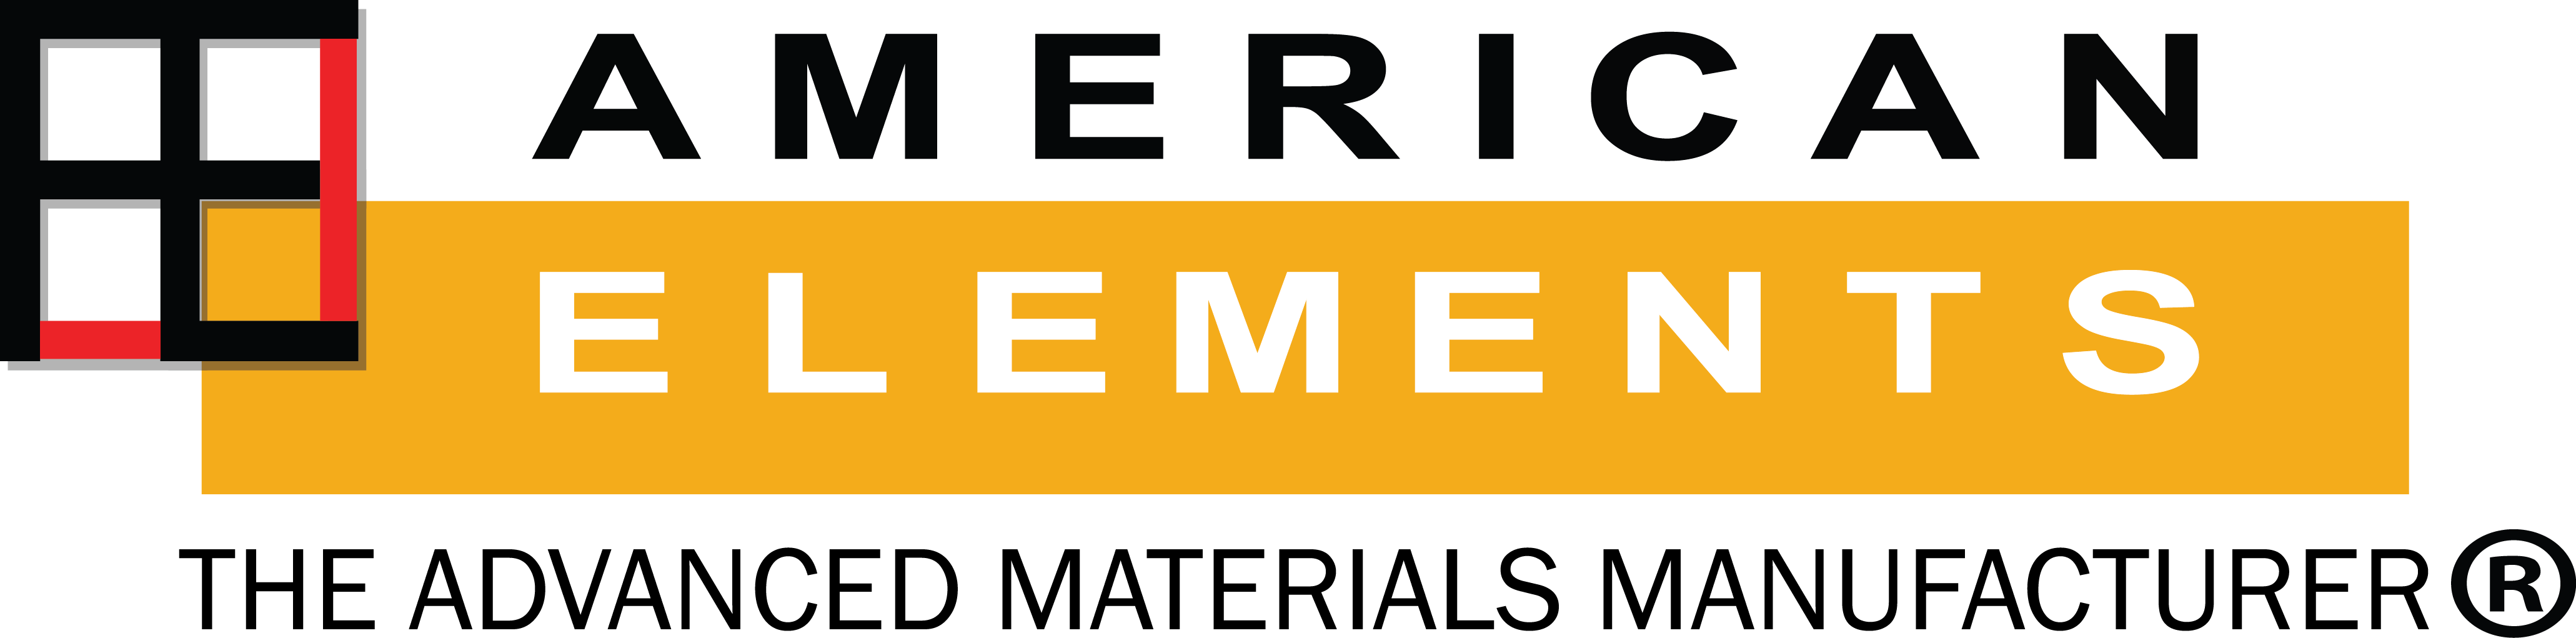 american elements metals alloys nanomaterials composites advanced engineering materials